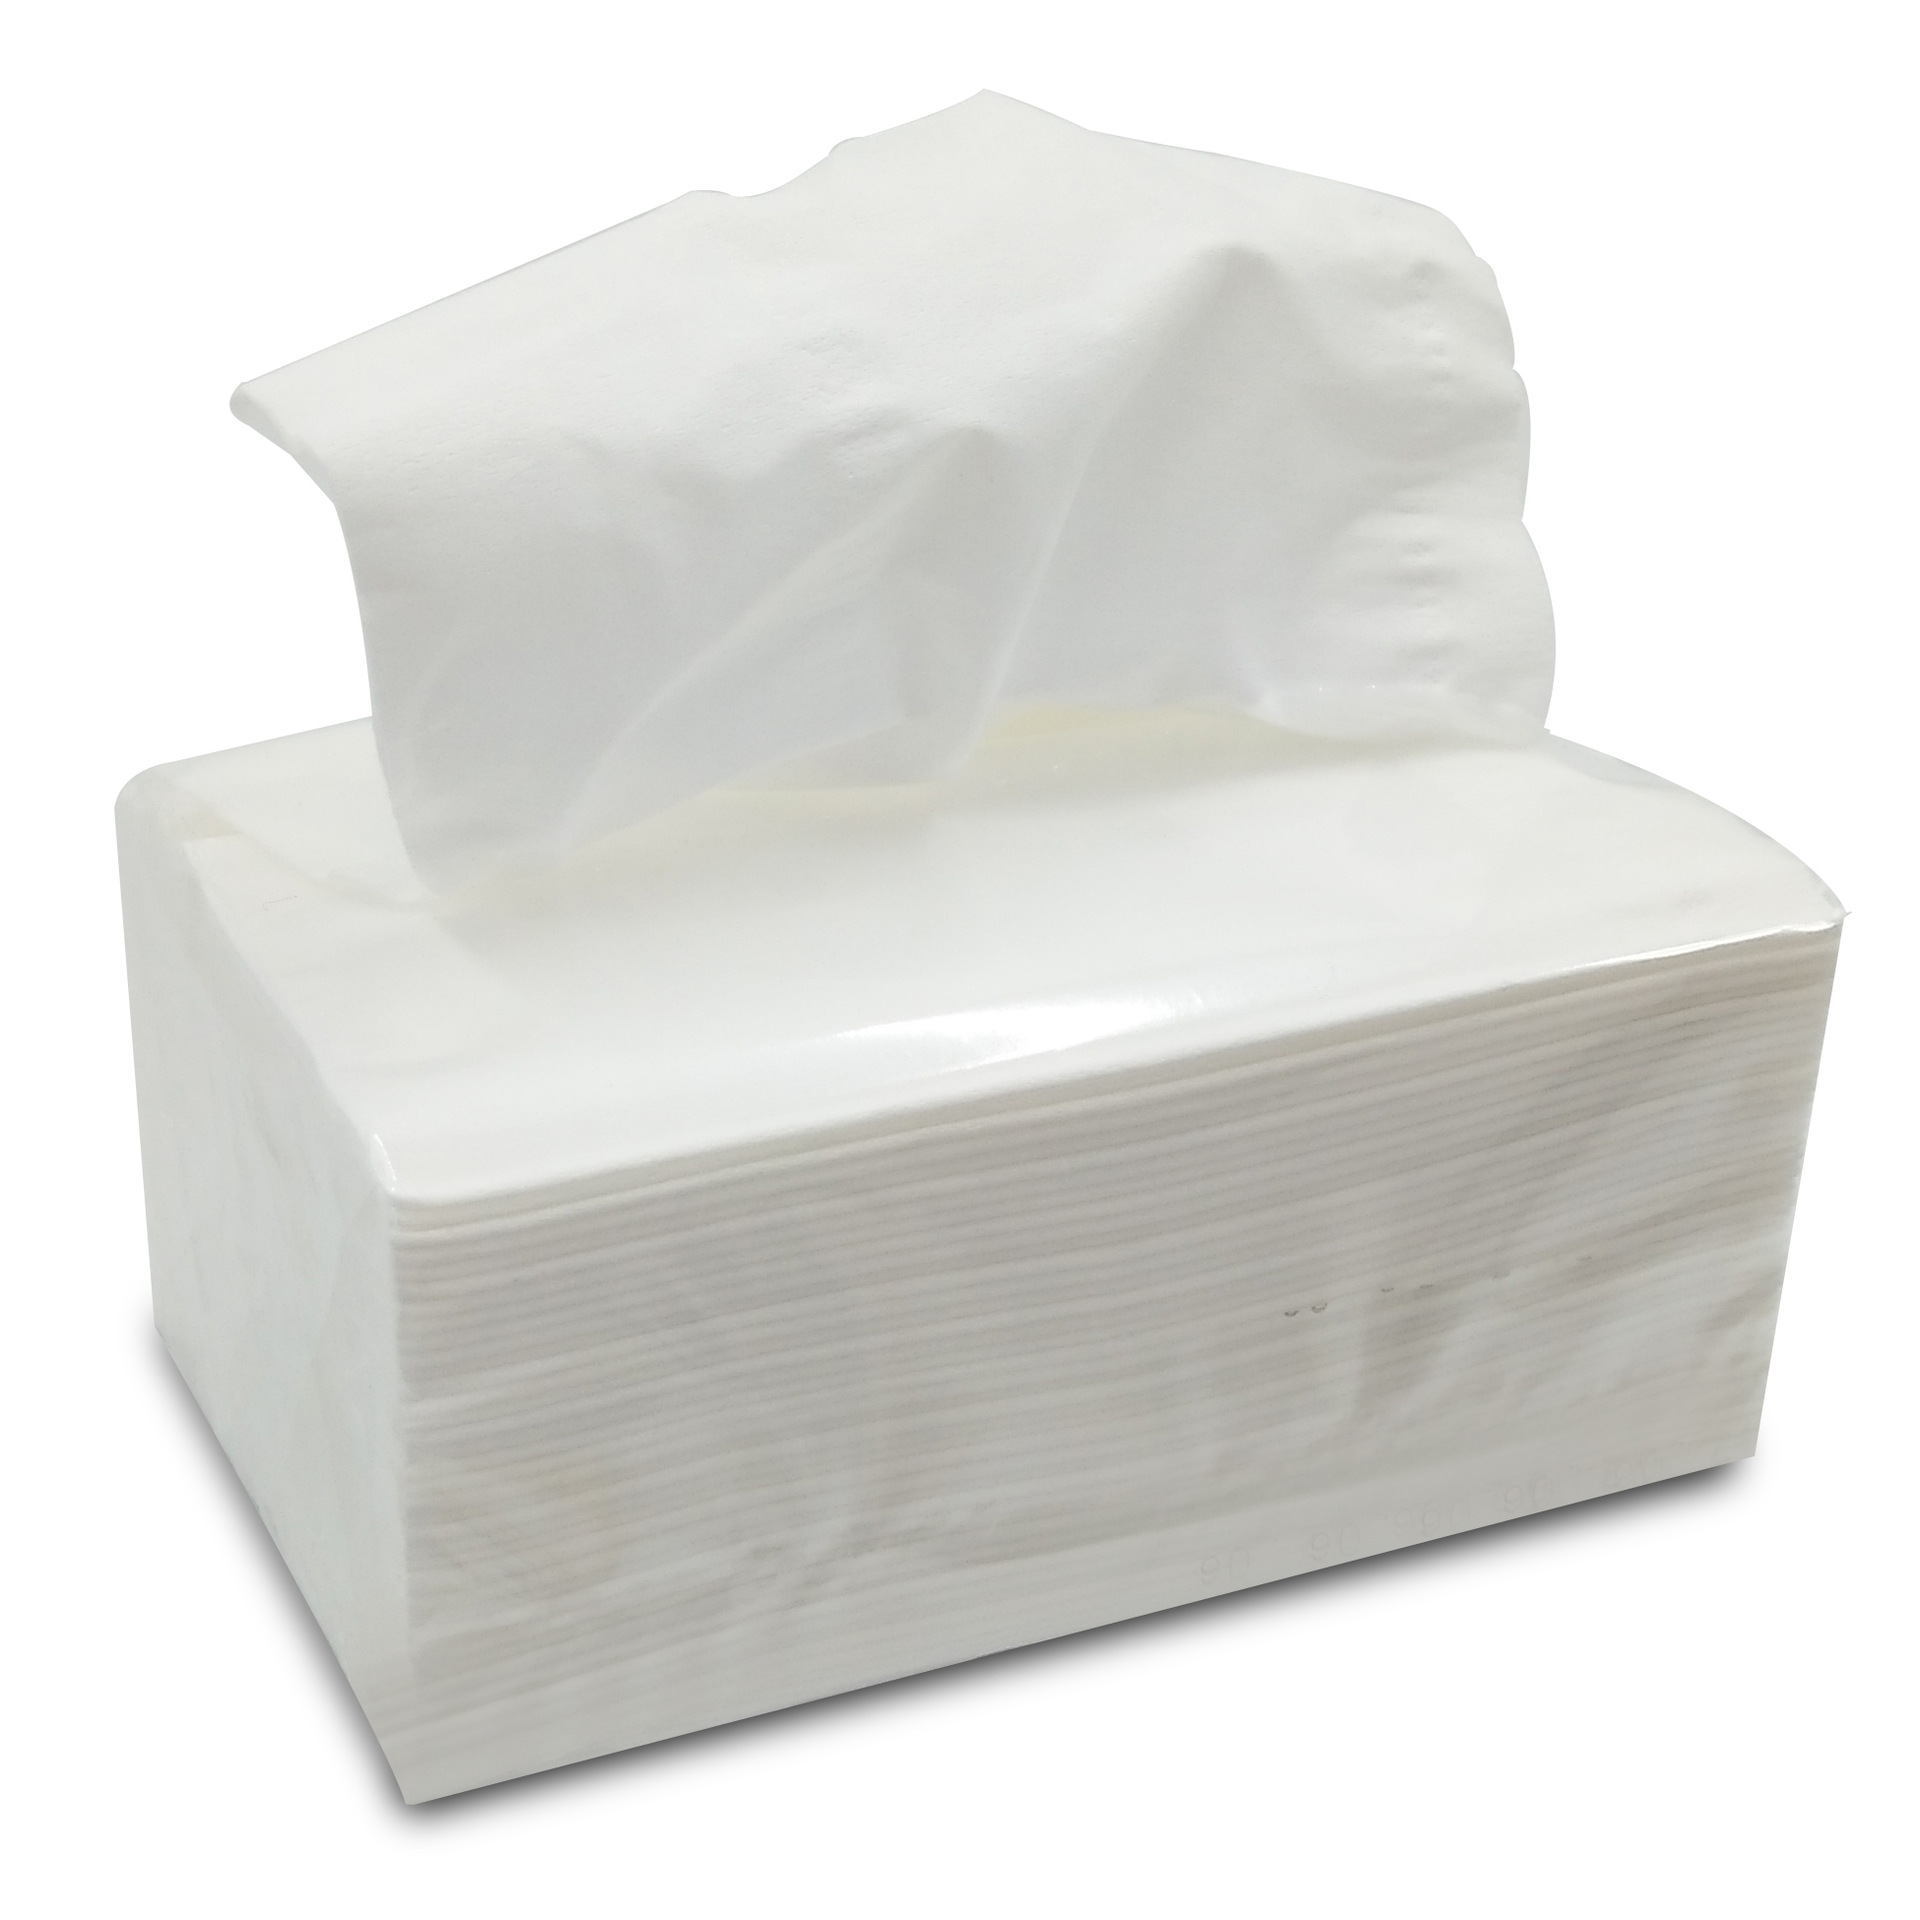 抽纸厂价直销抽取式餐巾纸2层120抽棉柔纸巾卫生纸批发多省包邮